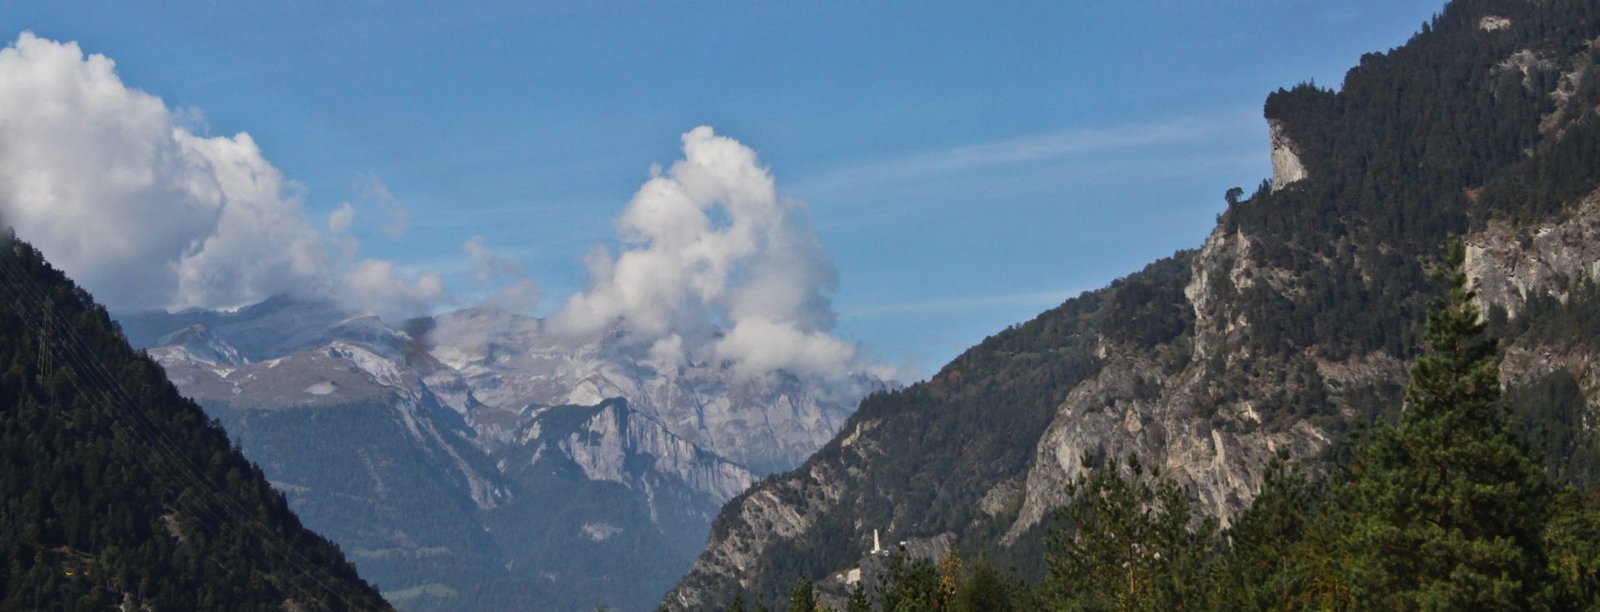 Перевал через Альпы, граница Италии и Швейцарии, октябрь 2014